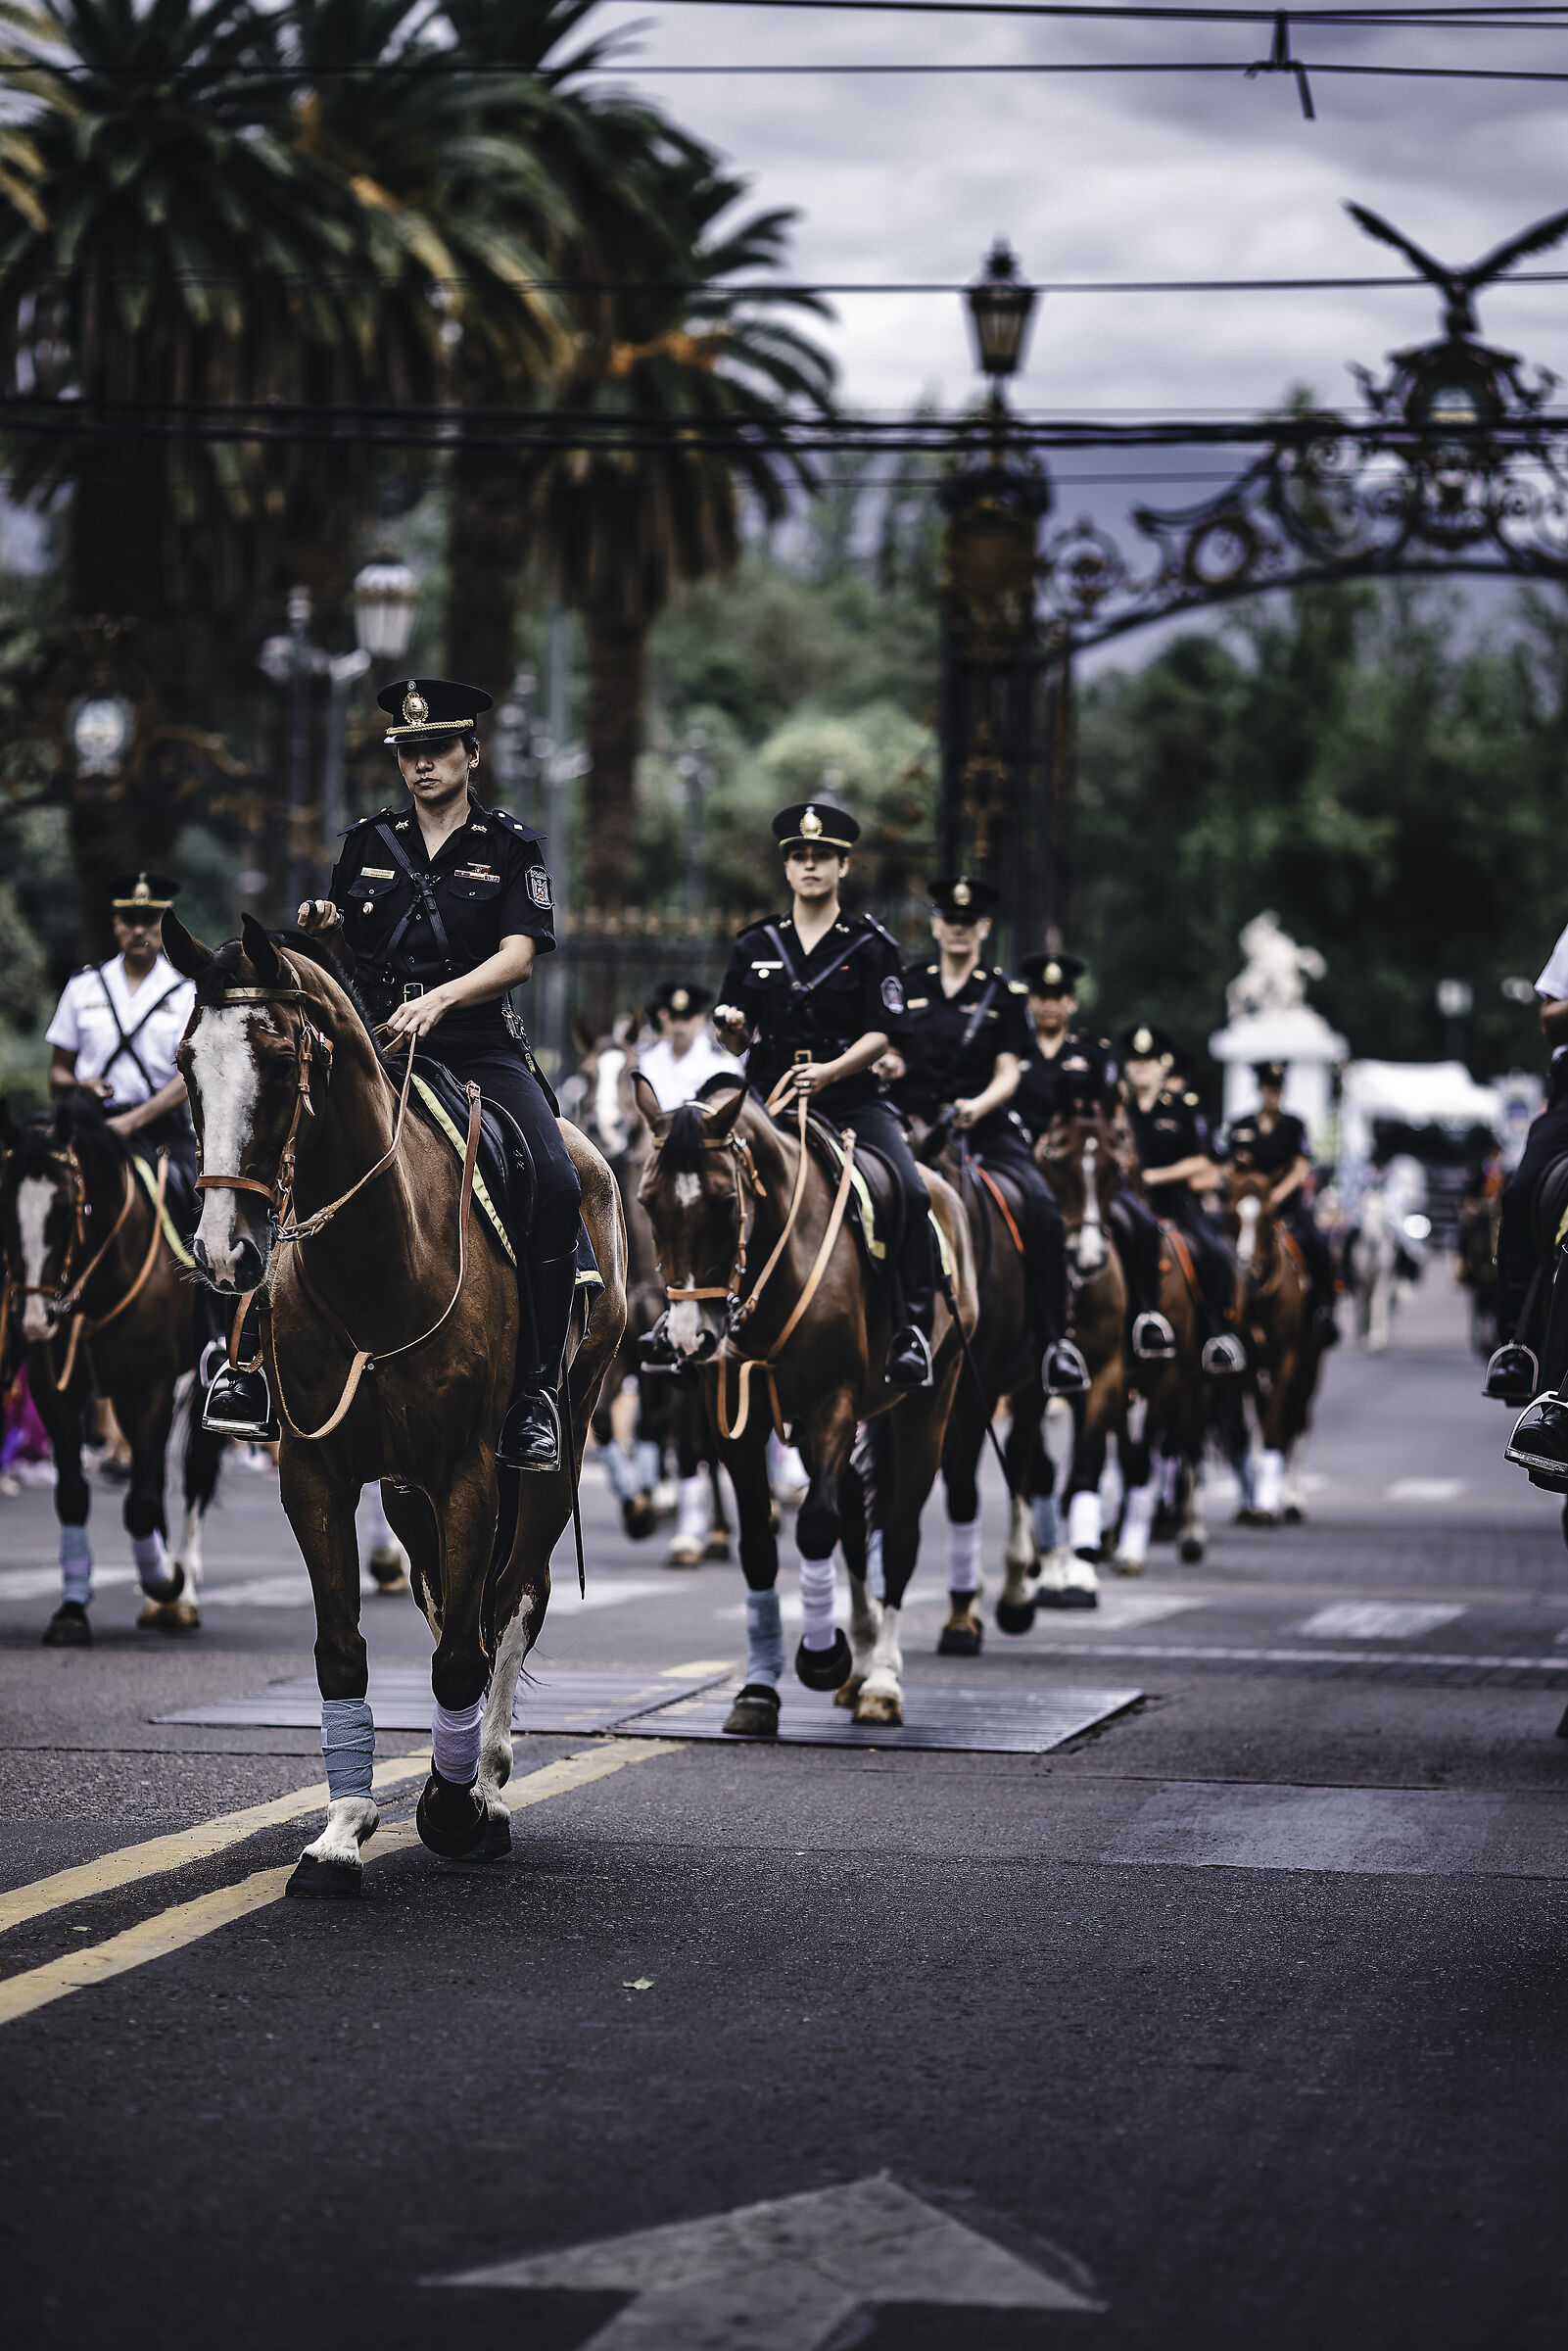 Policia a caballo...